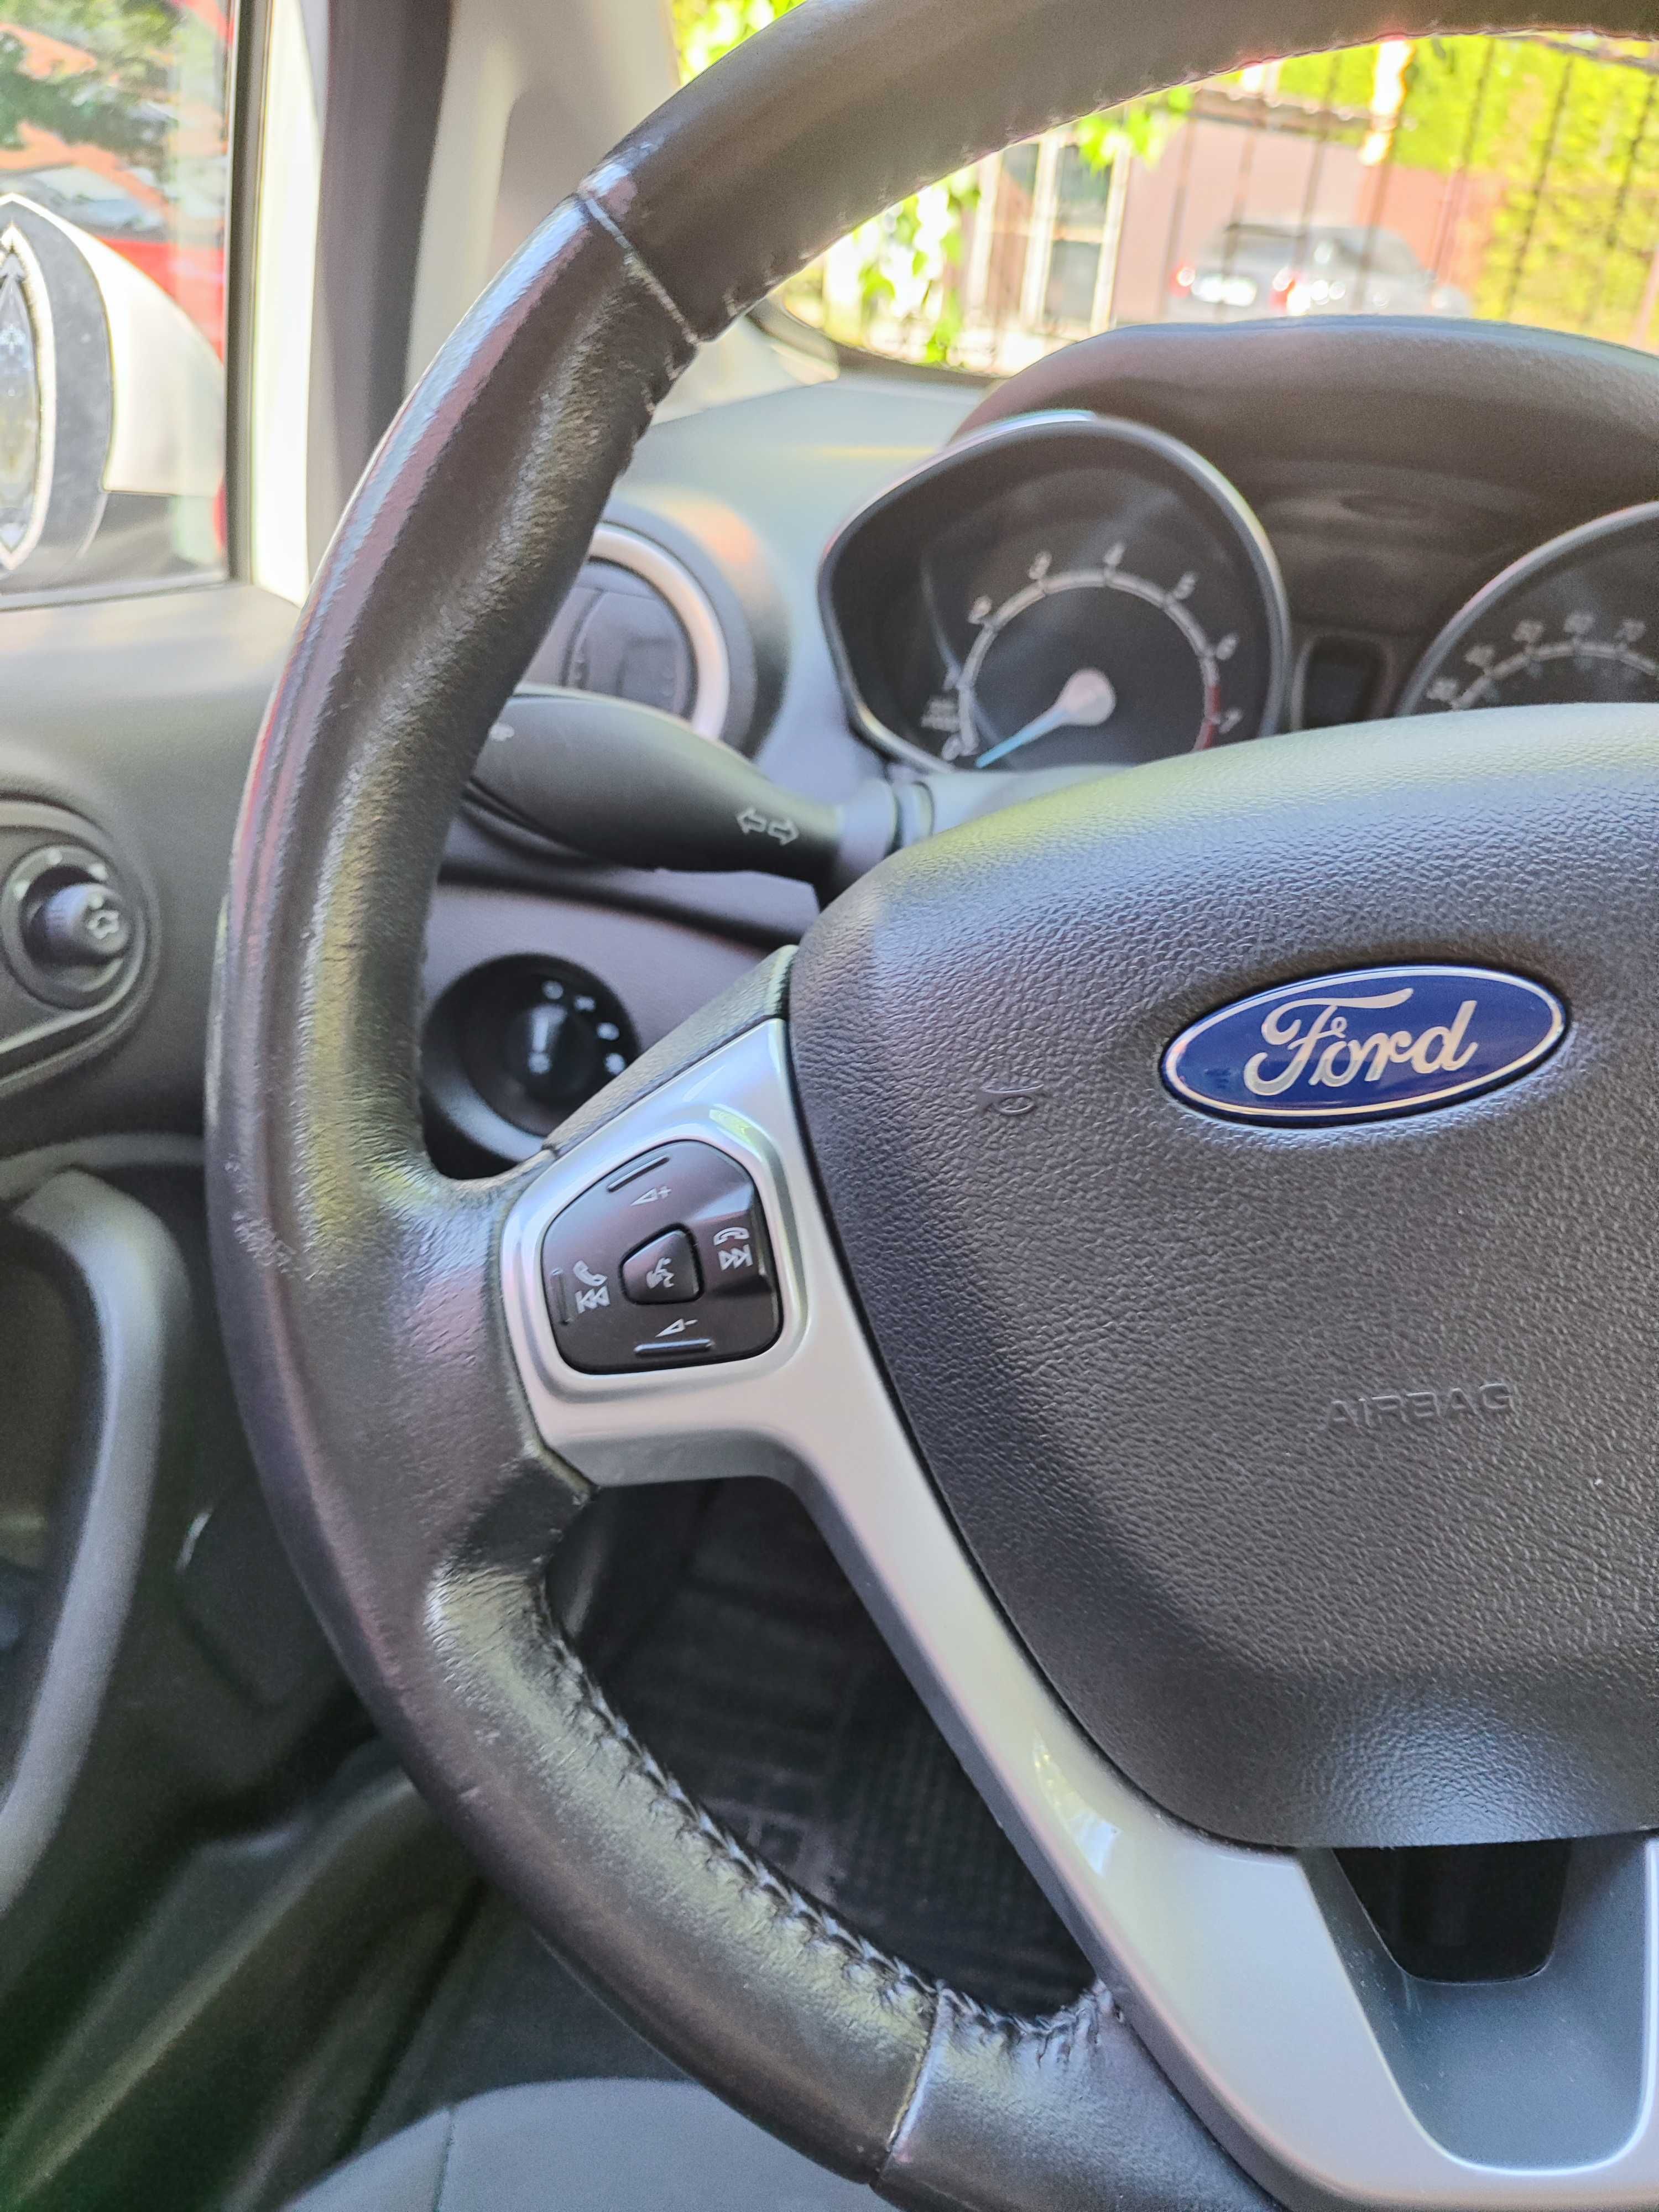 Автомобиль Ford Fiesta, автомат, 1.6